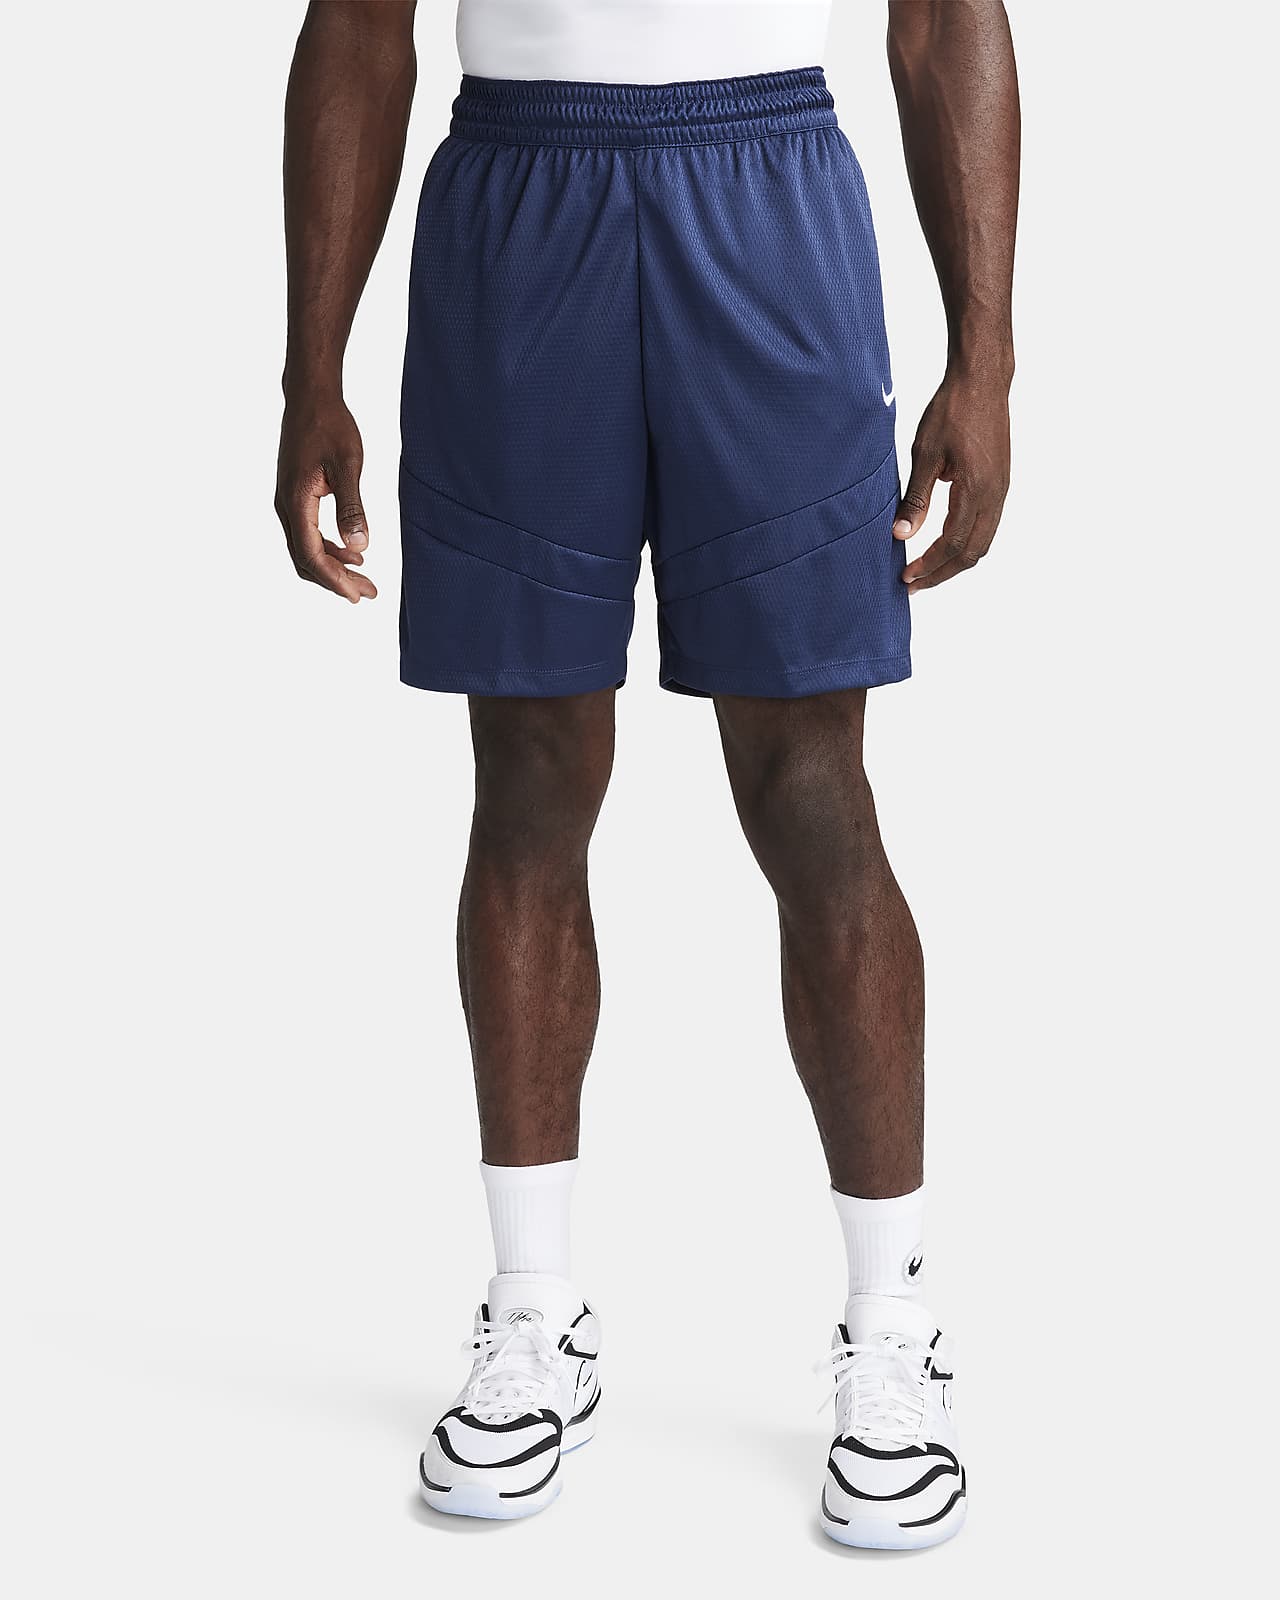 Pánské 20cm basketbalové kraťasy Nike Icon